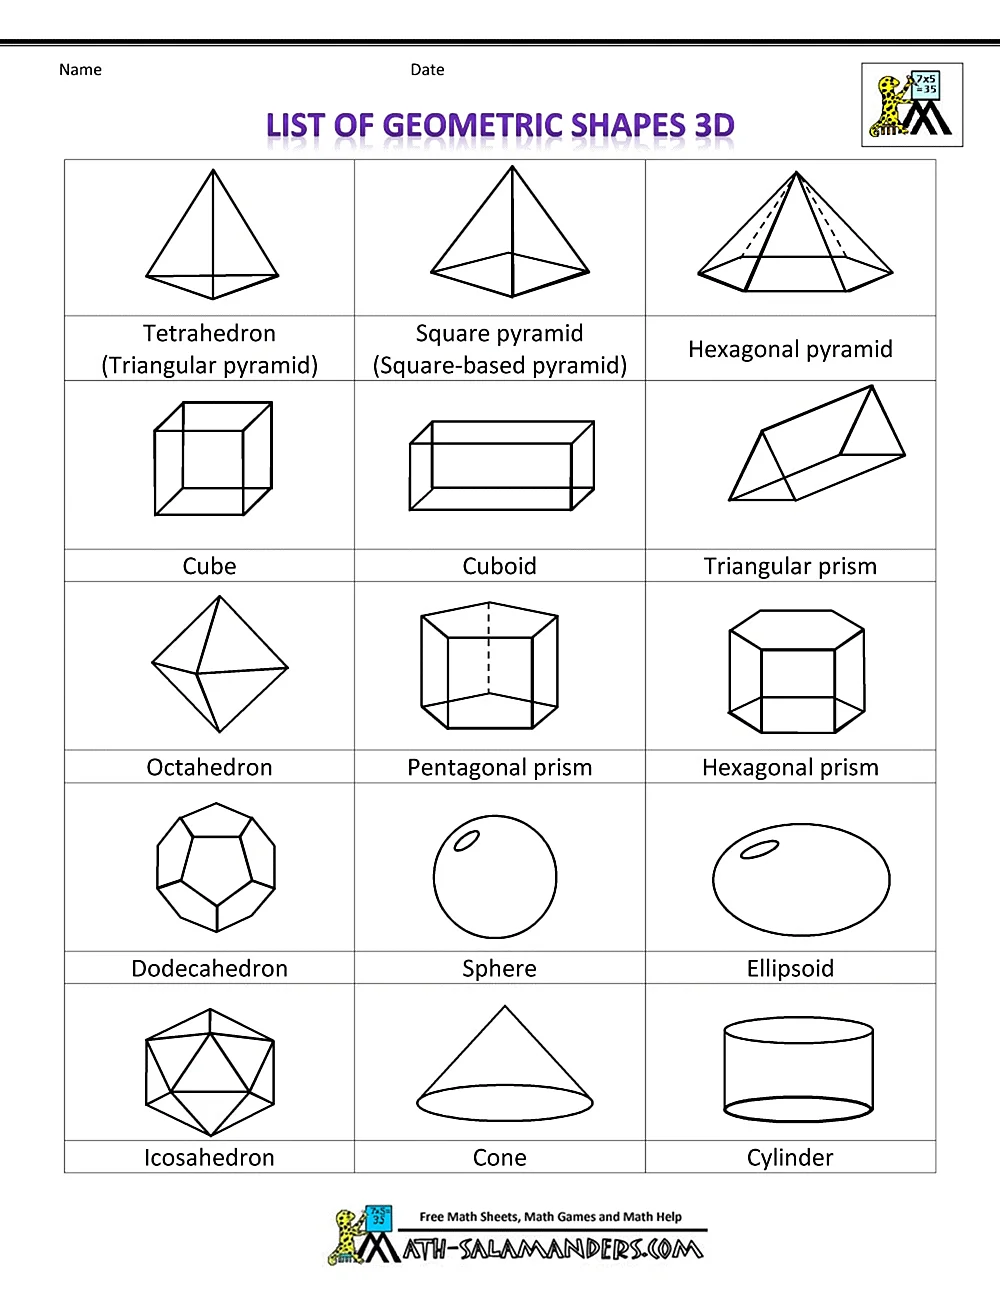 Фигуры список. Двухмерные геометрические фигуры и их названия. Сложные геометрические фигуры и их названия. Названия объемных геометрических фигур. Стереометрические фигуры и их названия.